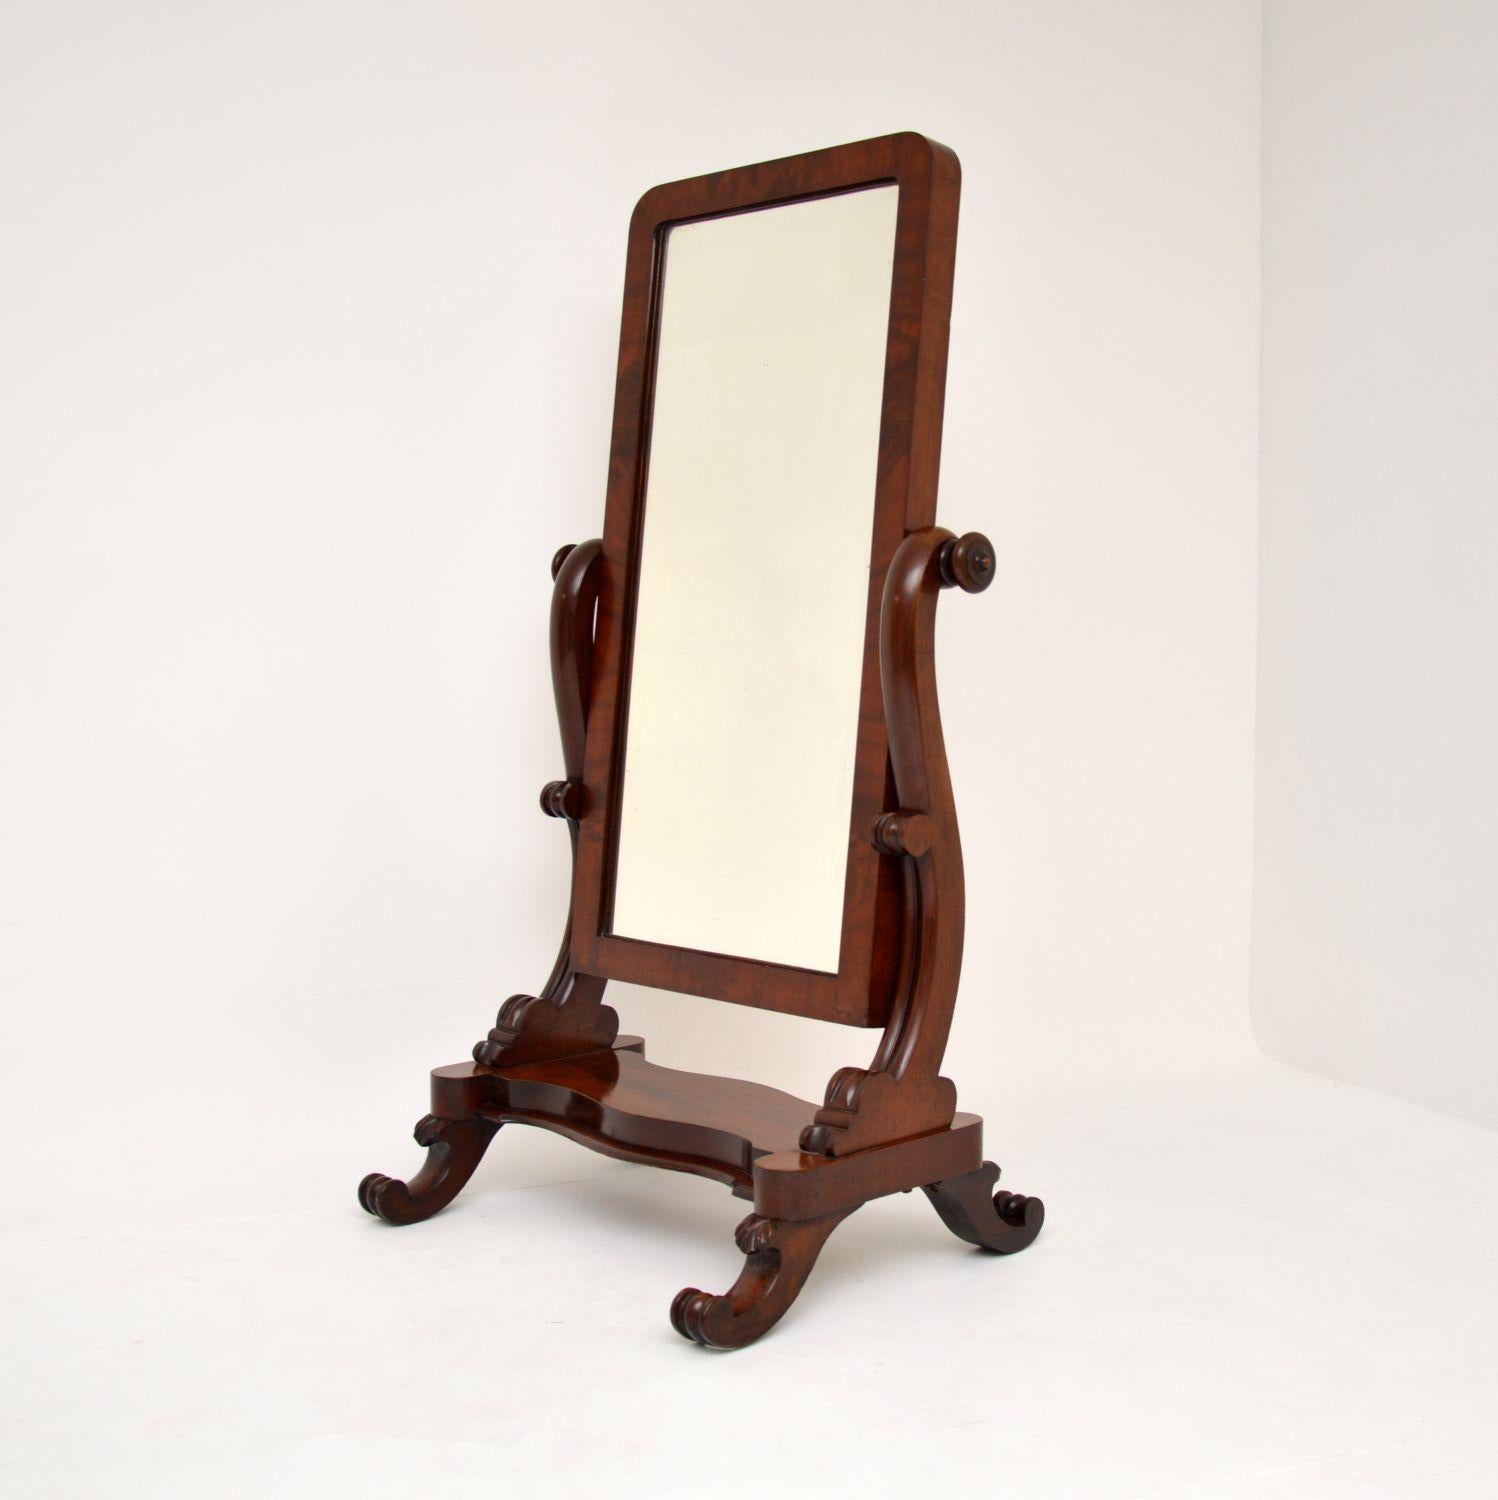 Un fantastique miroir chevaleresque d'origine du milieu de l'époque victorienne. Il a été fabriqué en Angleterre, il date d'environ 1860-1880.

Ce miroir est très bien fait et de très bonne taille, suffisamment grand pour être utilisé comme miroir